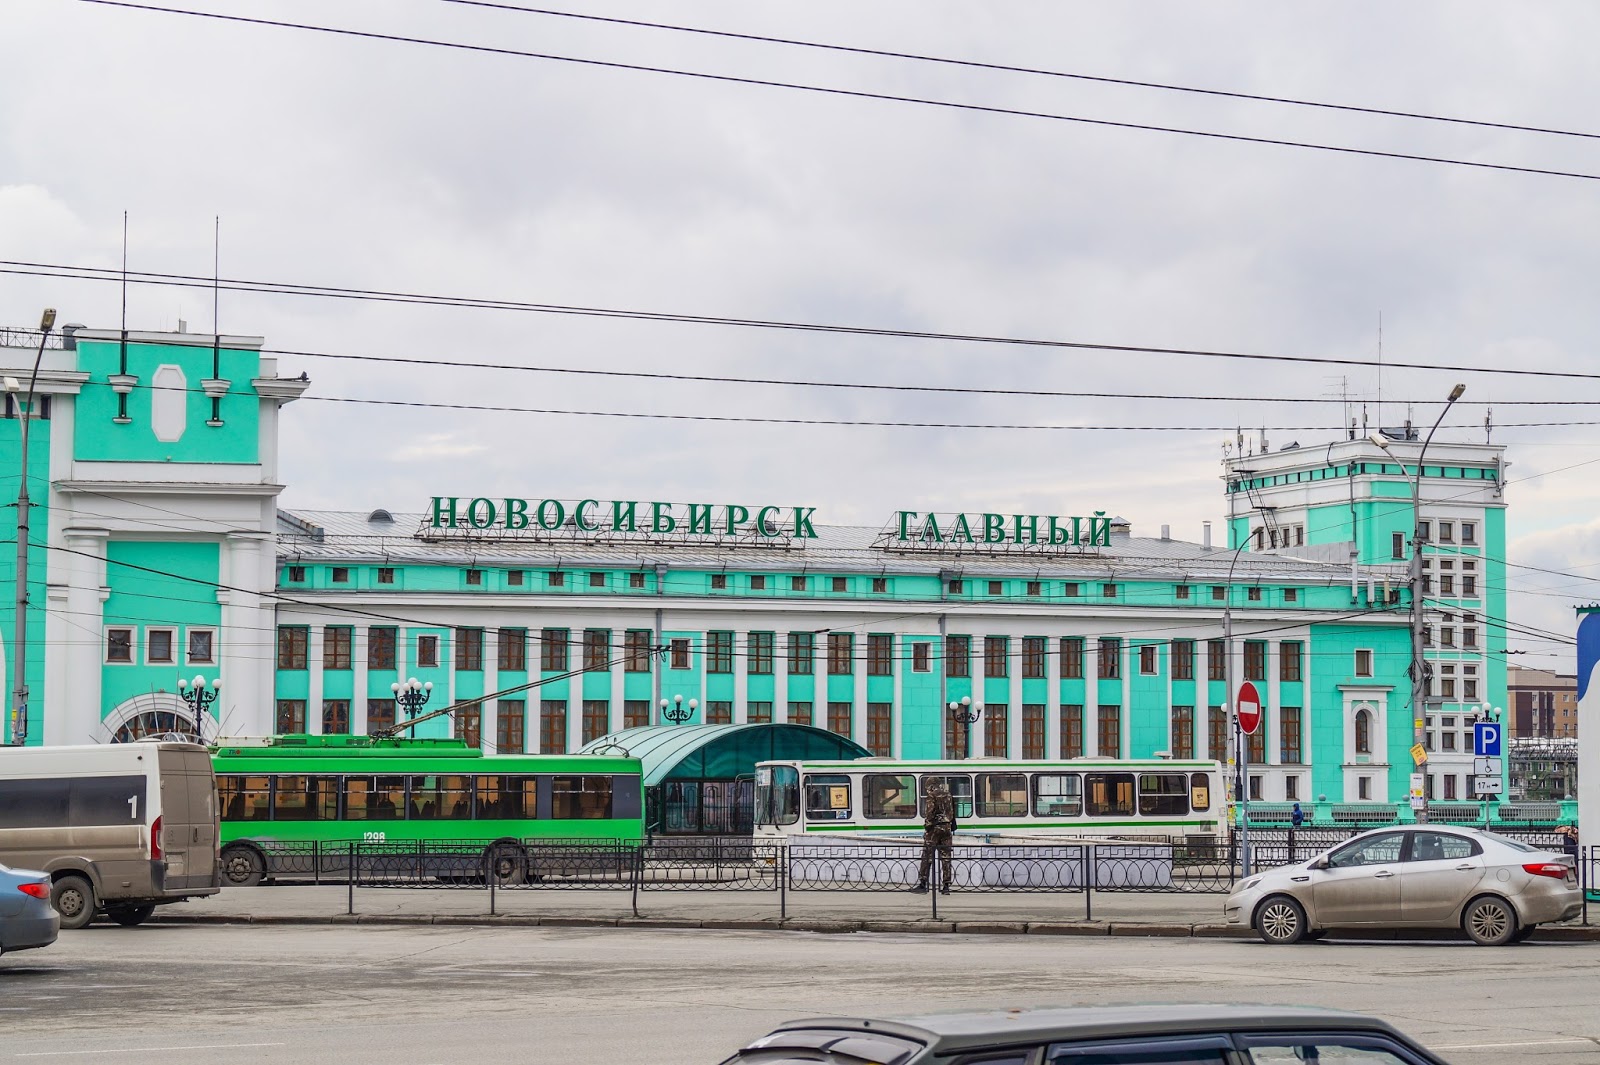 Вокзал главный новосибирск телефоны. Станция Новосибирск-главный, Новосибирск. Новосибирский главный вокзал главный Новосибирск. Автостанция Новосибирск ЖД вокзал главный. Новосибирск автостанции на вокзале.